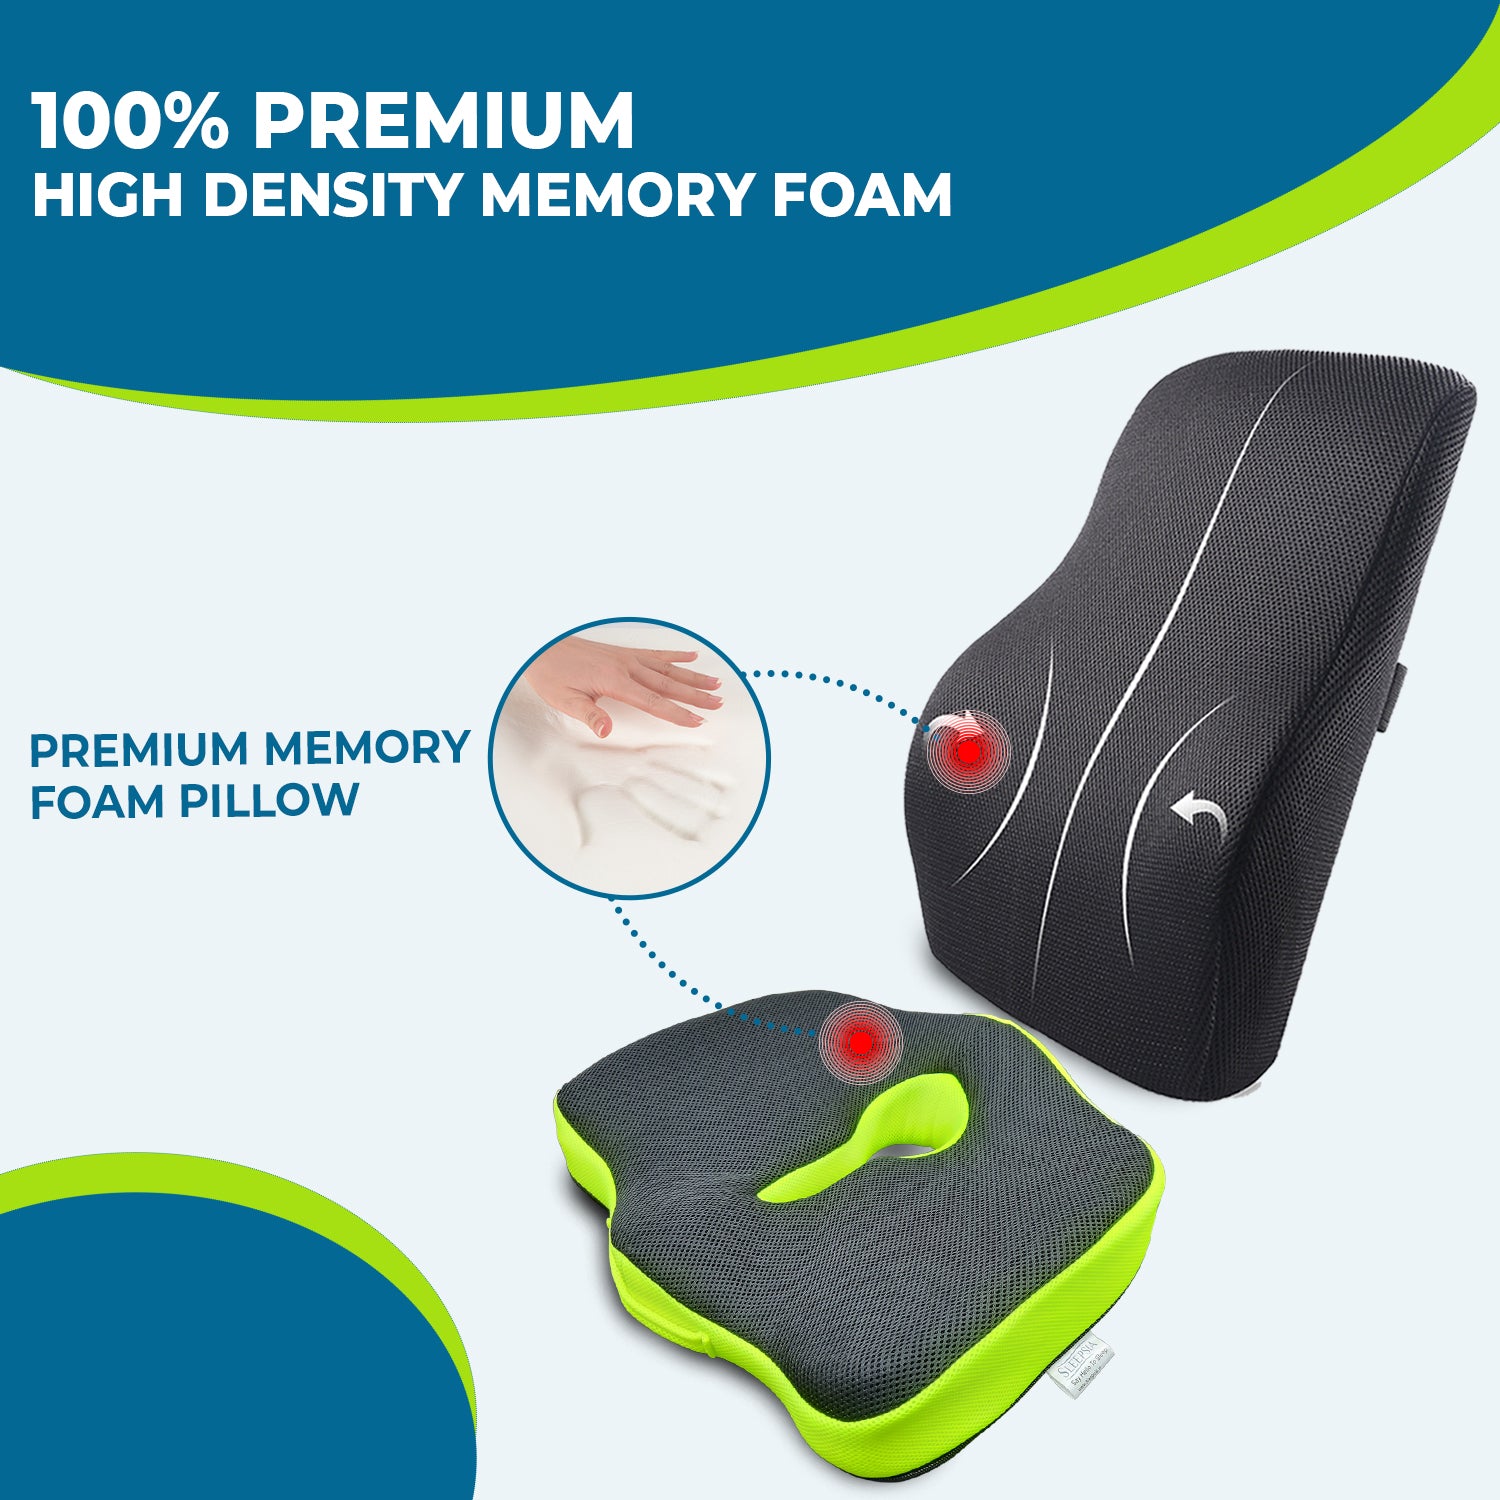 Lumbar Support Memory Foam Cushion, Memory Foam Coccyx Seat Cushion (Combo)